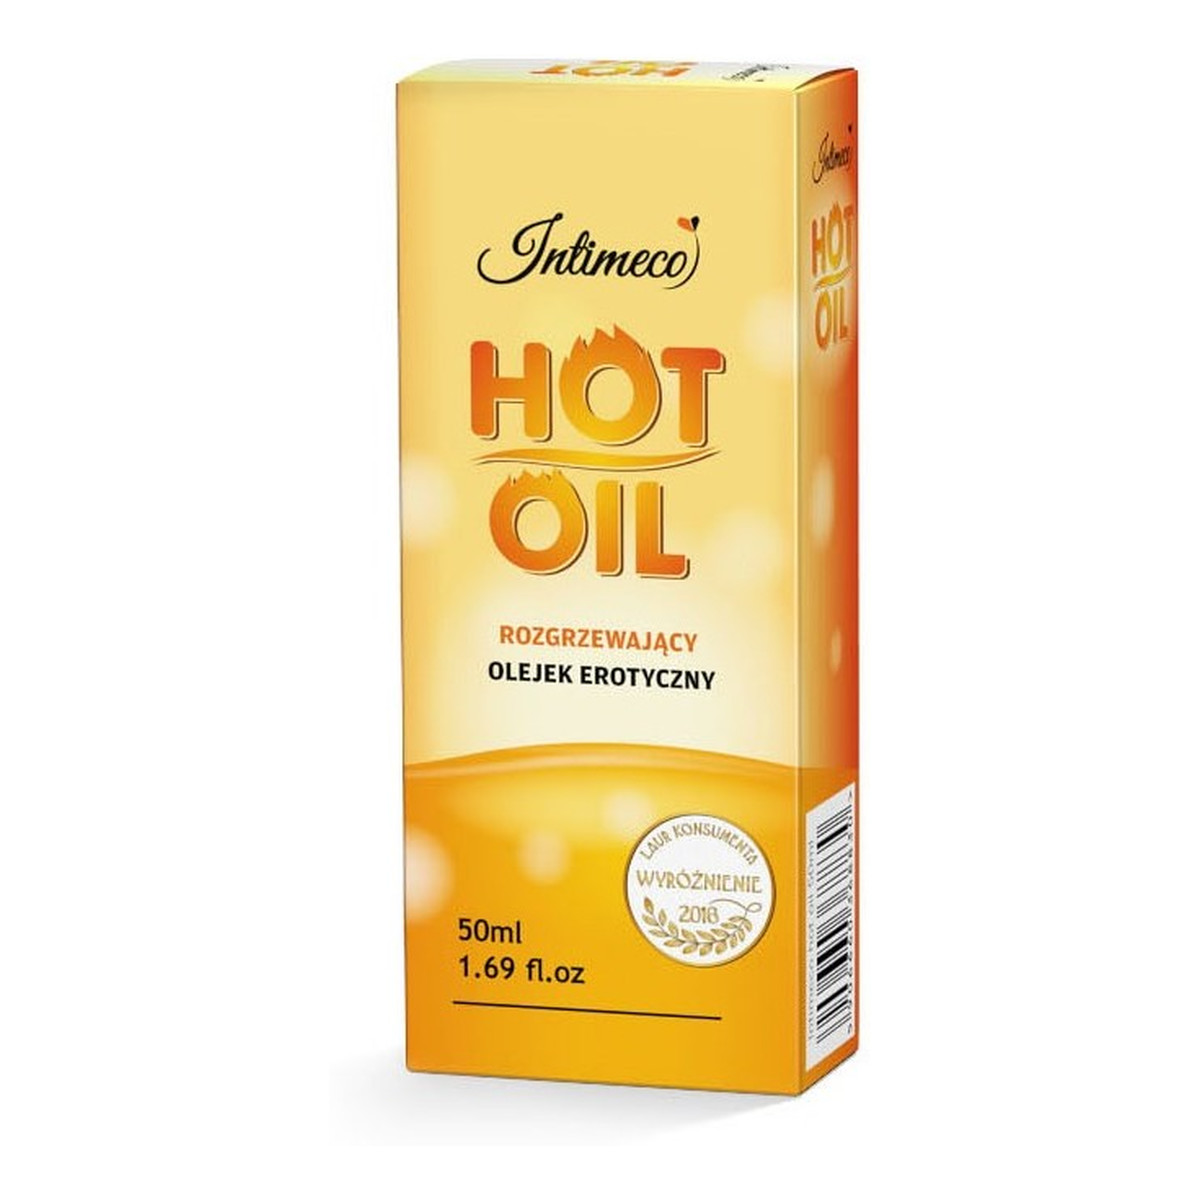 Intimeco Hot Oil rozgrzewający Olejek erotyczny do masażu 50ml